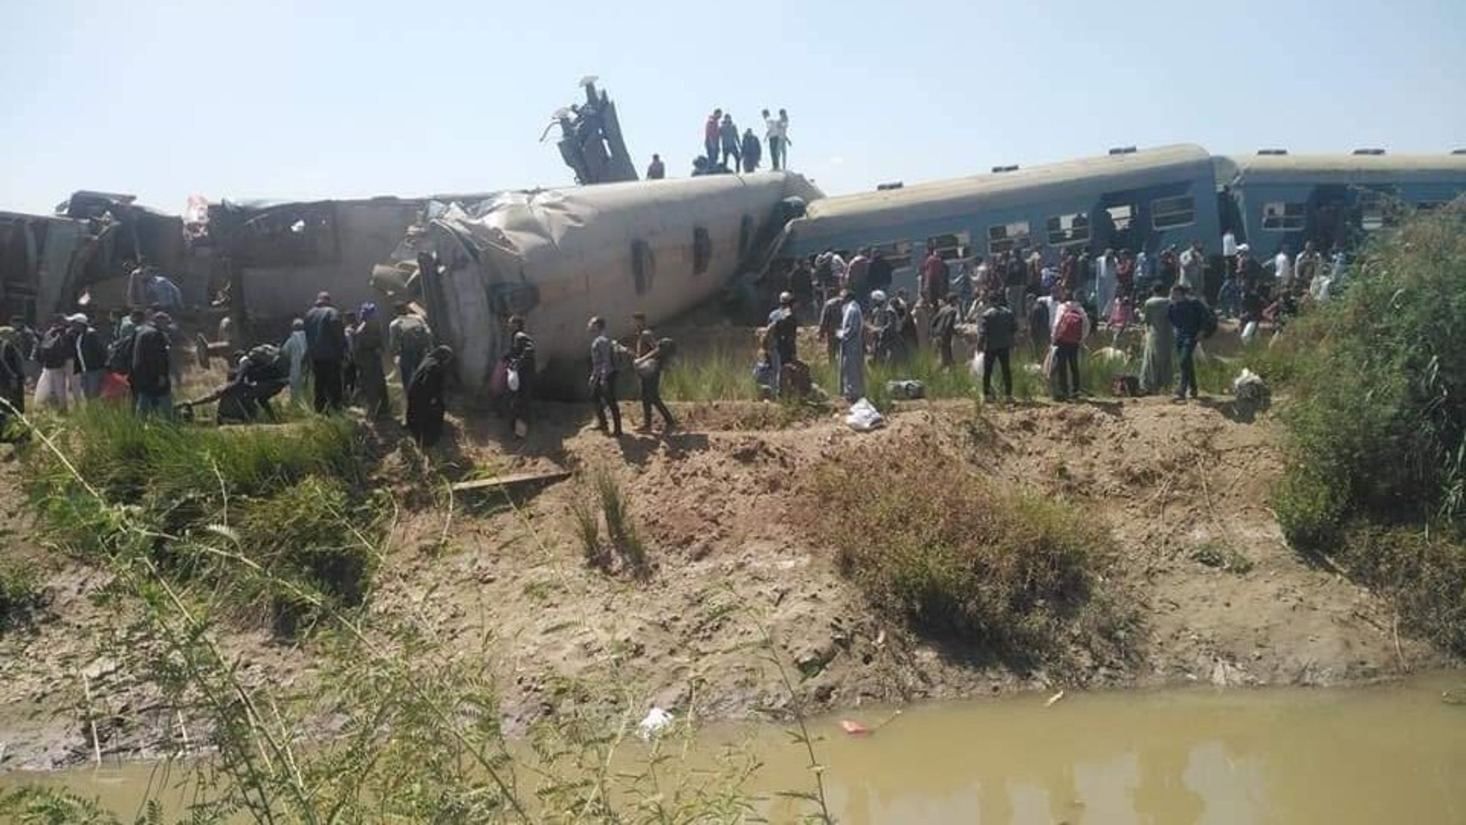 Аварія потягів у Єгипті 26 березня 2021: багато жертв – відео 